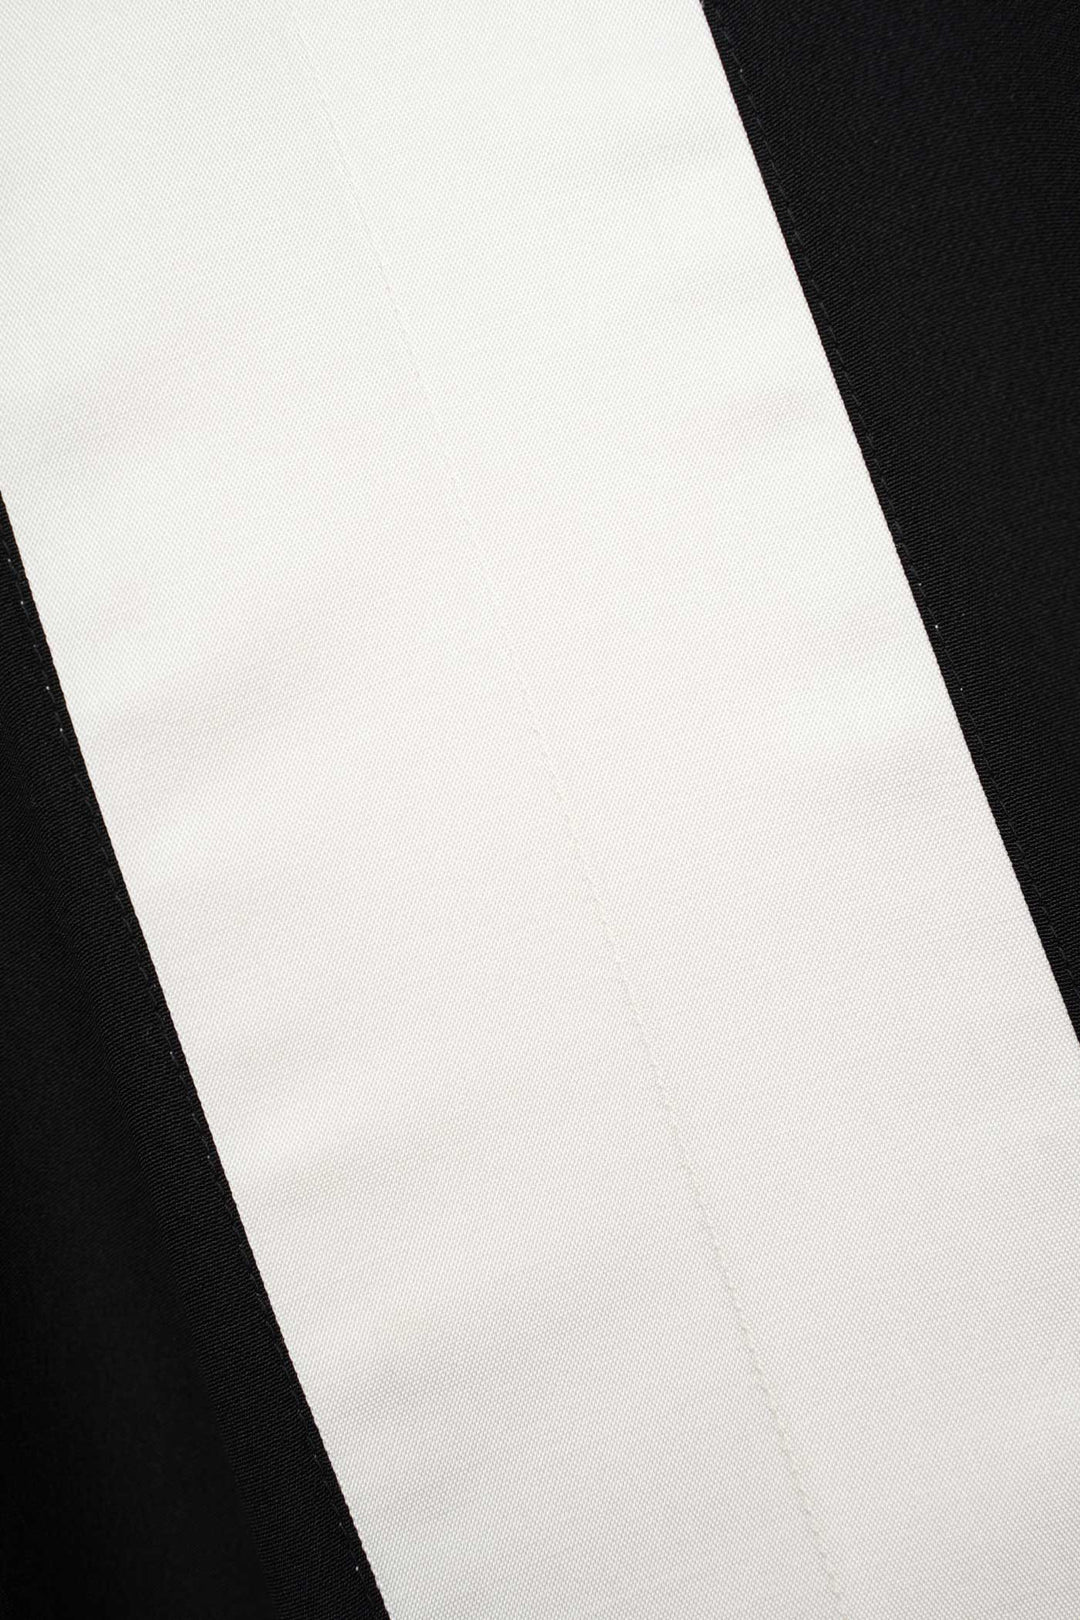 Black & White Silk Shift Dress | Canto Notturno